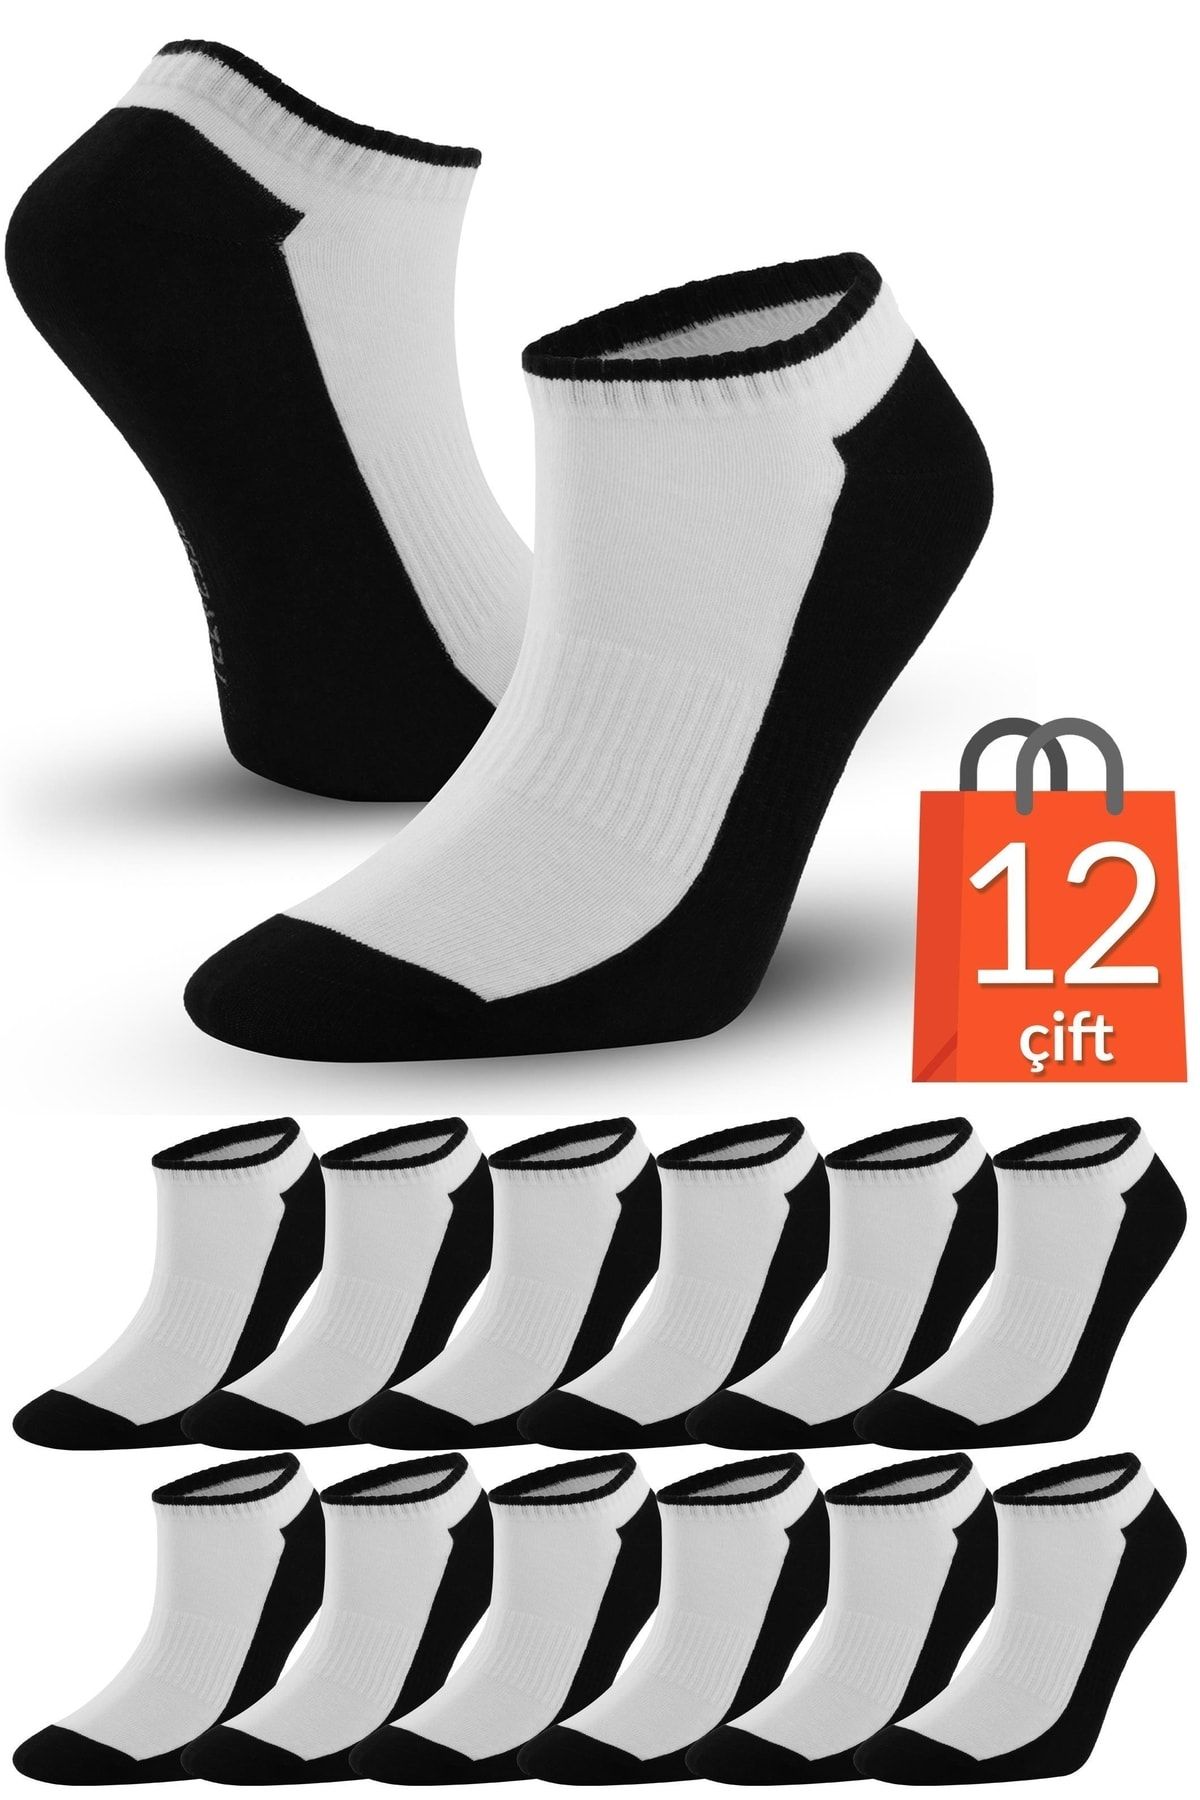 Telvesse 12 Çift Marcher Dikişsiz Patik Çorap Spor Kısa Çift Renkli Kısa Konç Spor Çorabı Siyah-beyaz